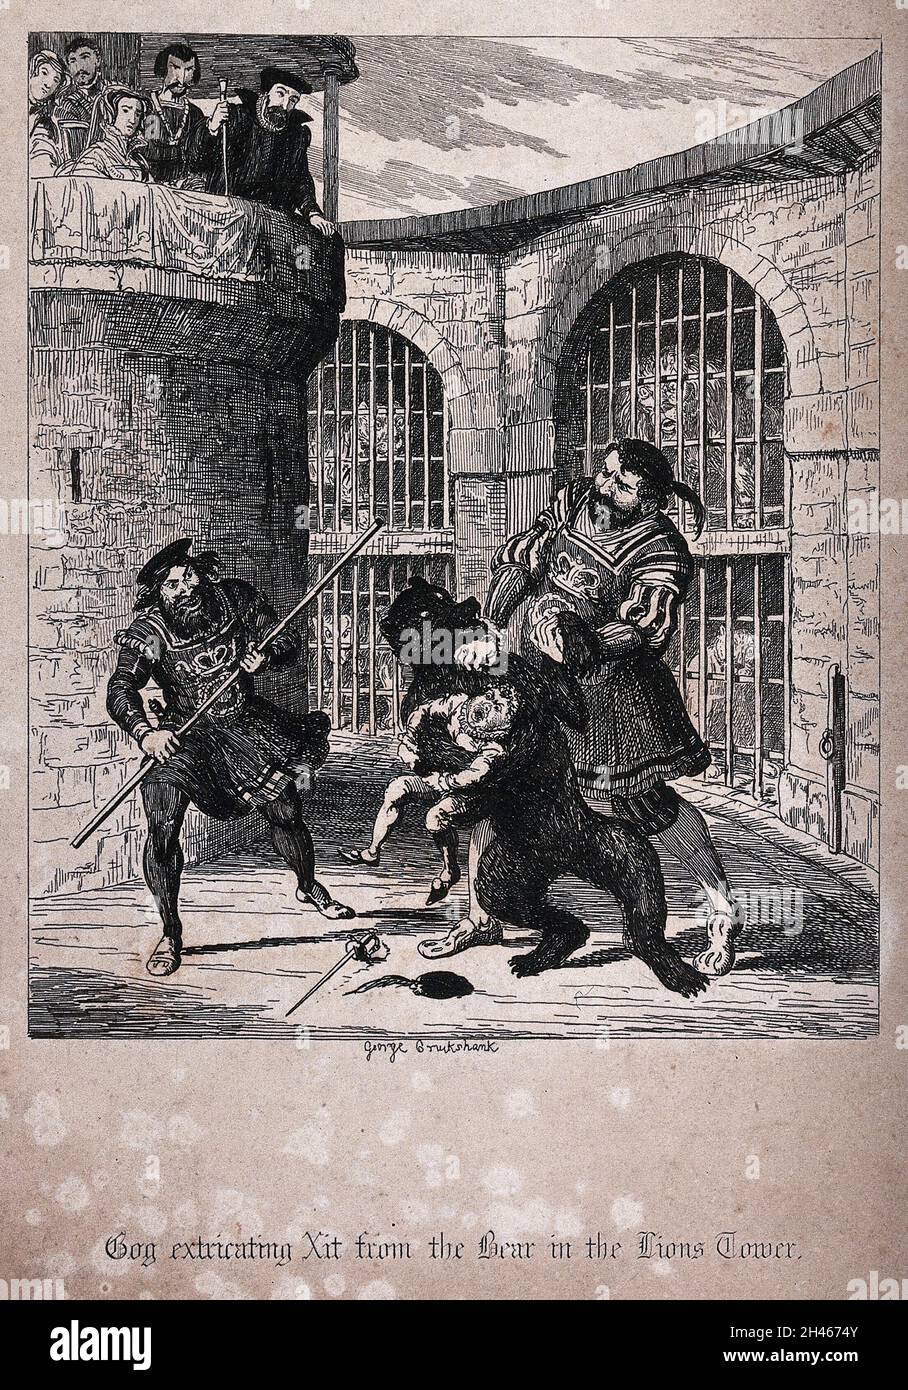 Der Riese Gog, der den Zwerg XIT von einem Bären im Lions Tower am Tower of London ausreißt, beobachtet von Queen Mary I. Etching von George Cruikshank. Stockfoto